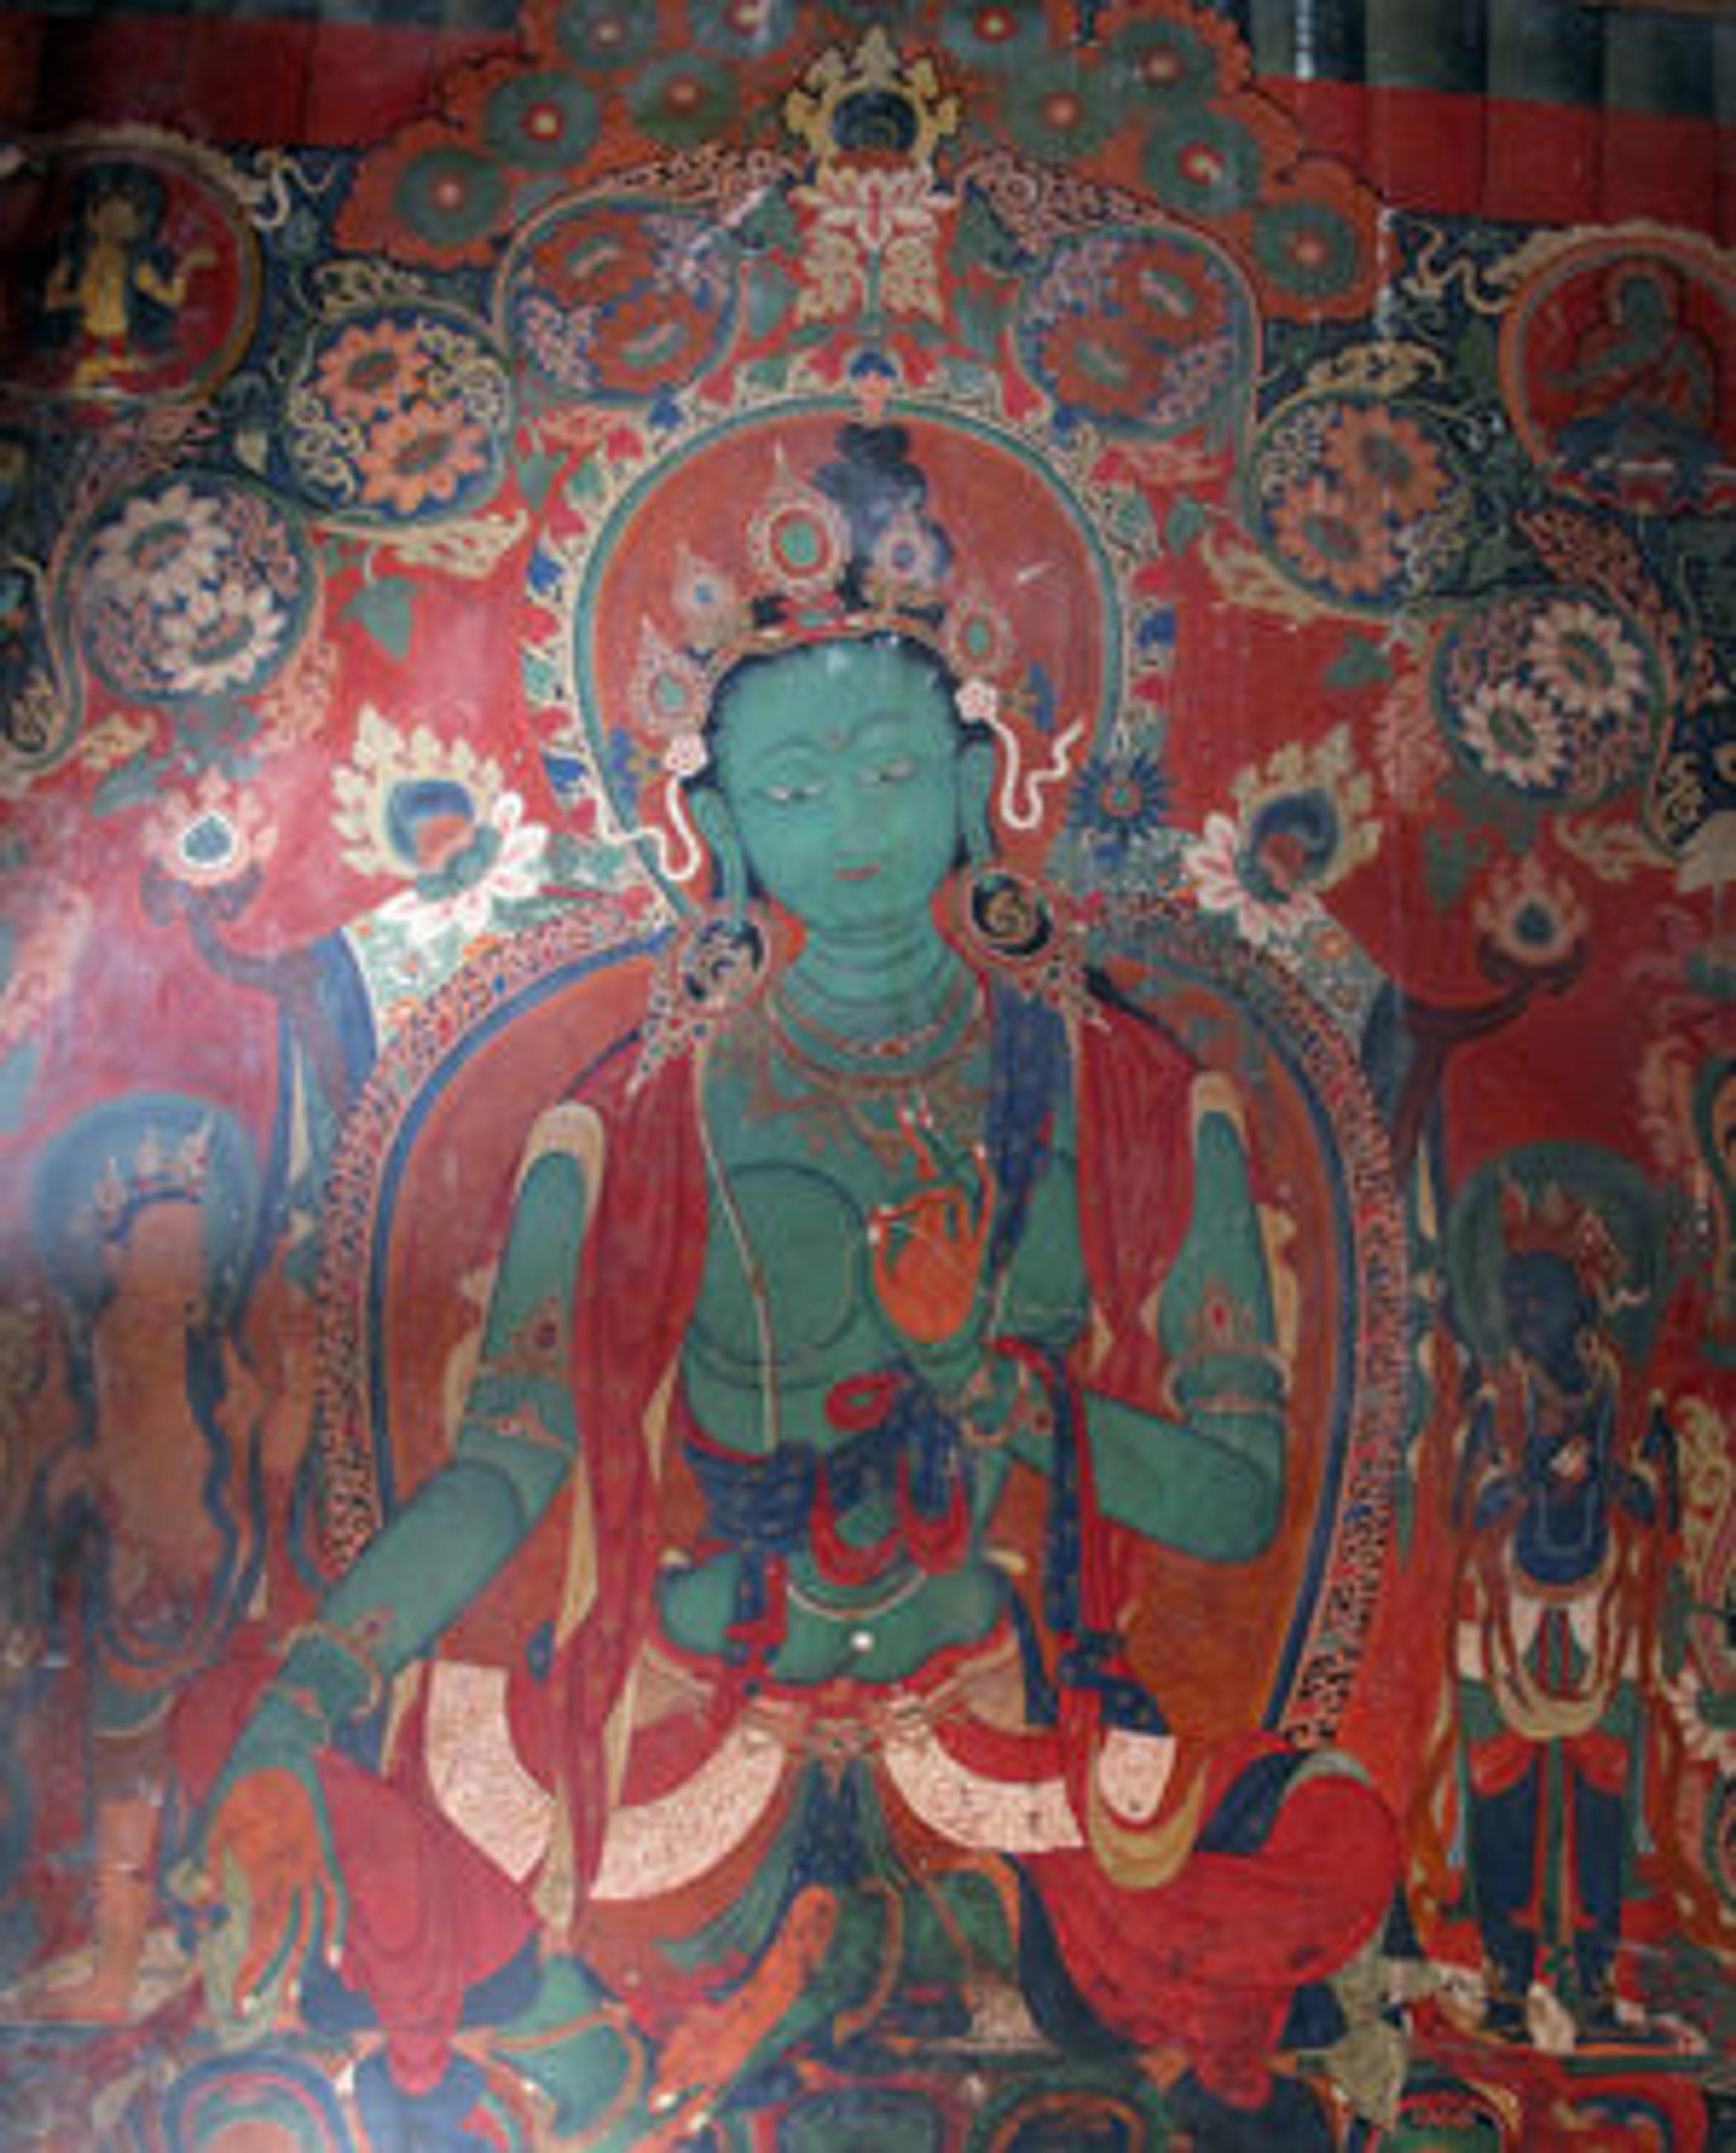 Green Tara from interior shrine of Gyantse Kumbum